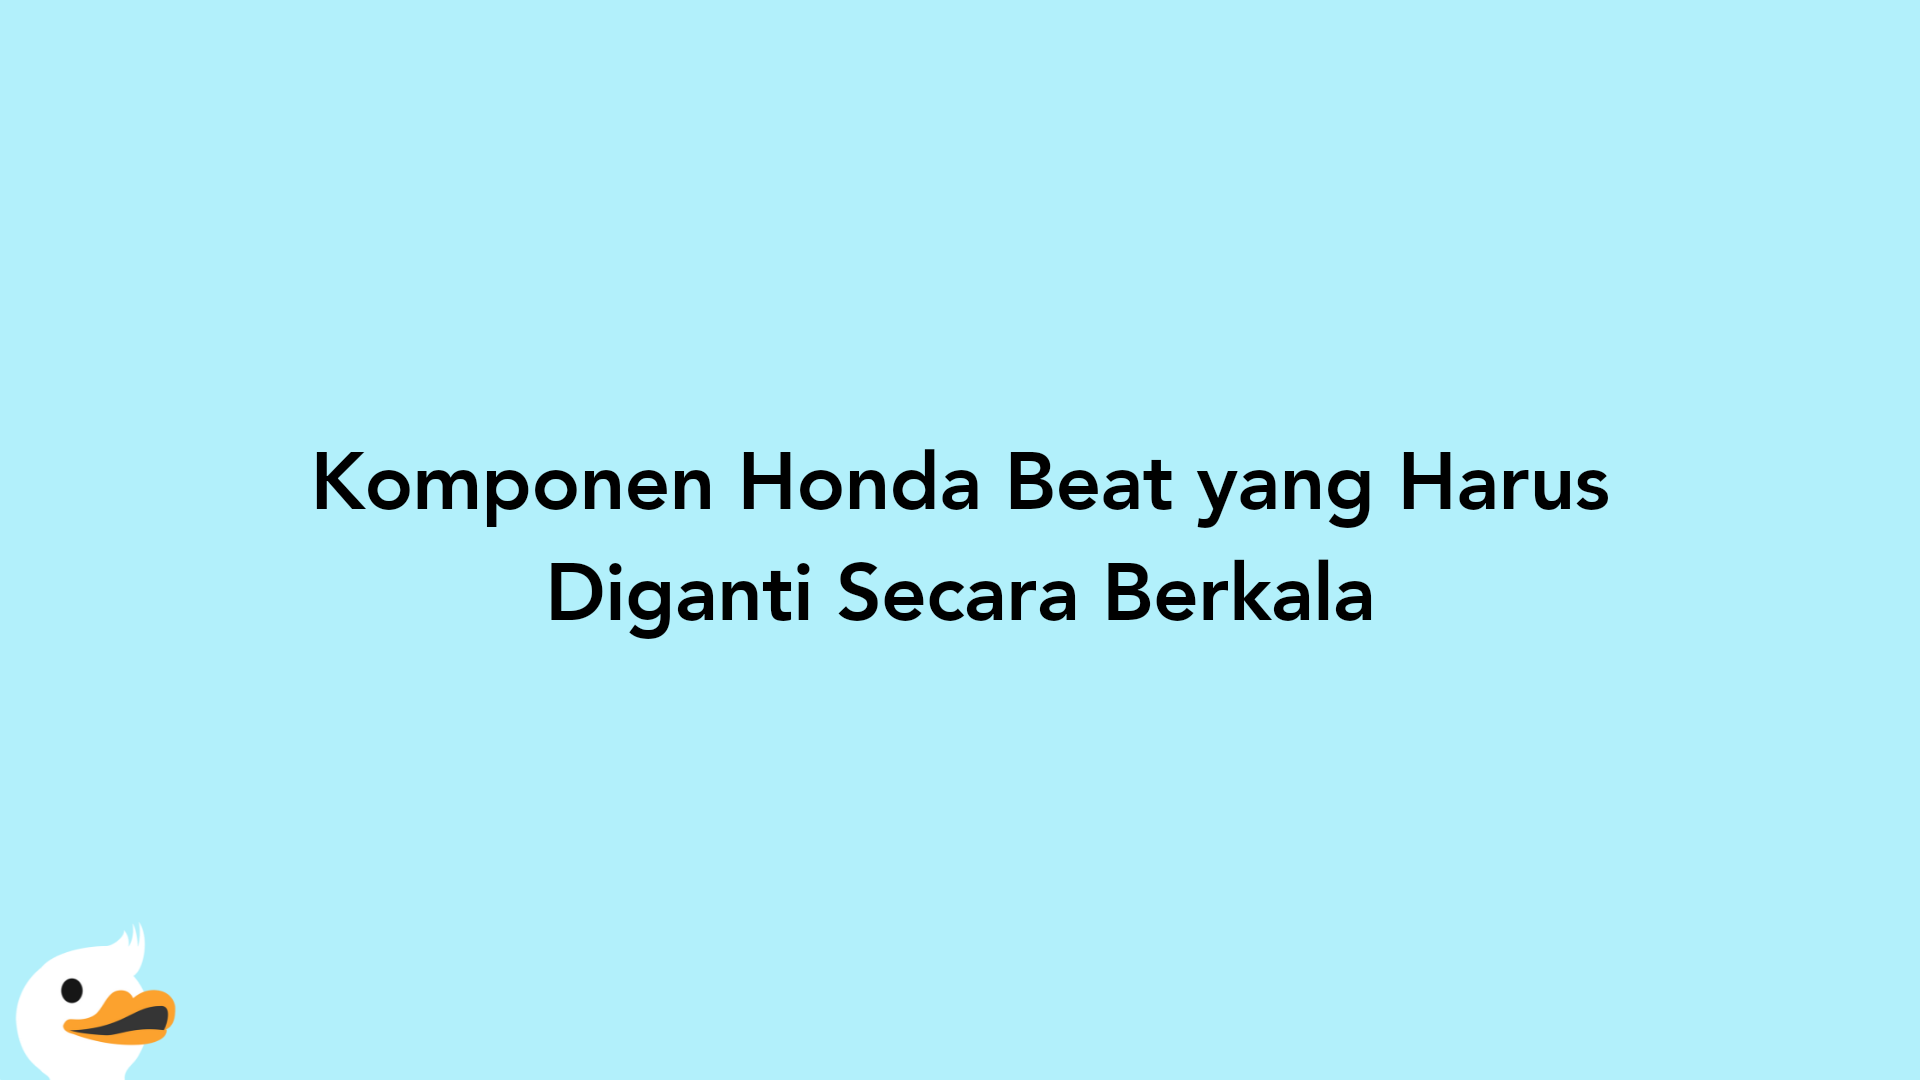 Komponen Honda Beat yang Harus Diganti Secara Berkala